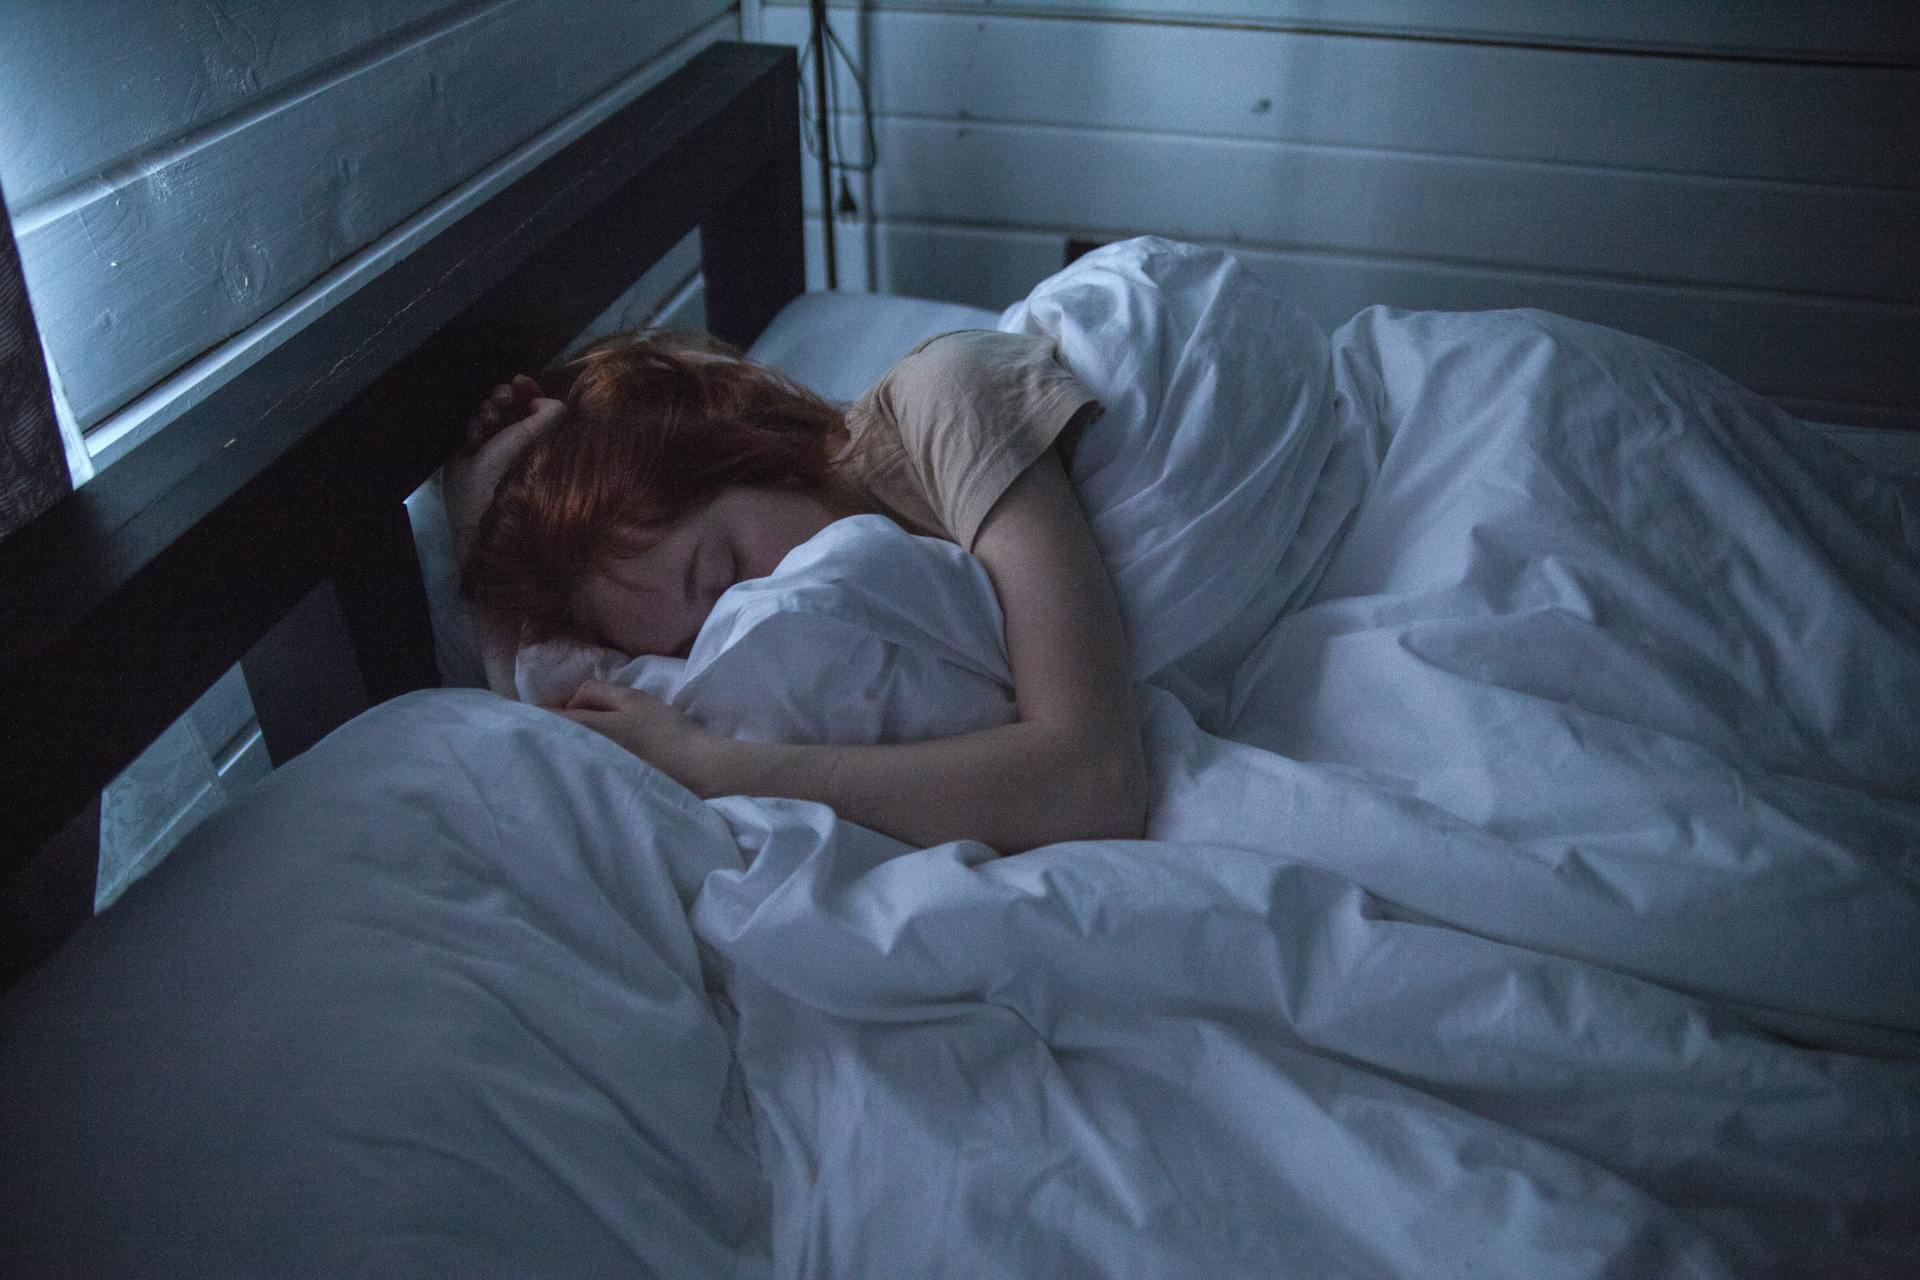 Une femme enveloppée dans des draps au lit | Source : Pexels